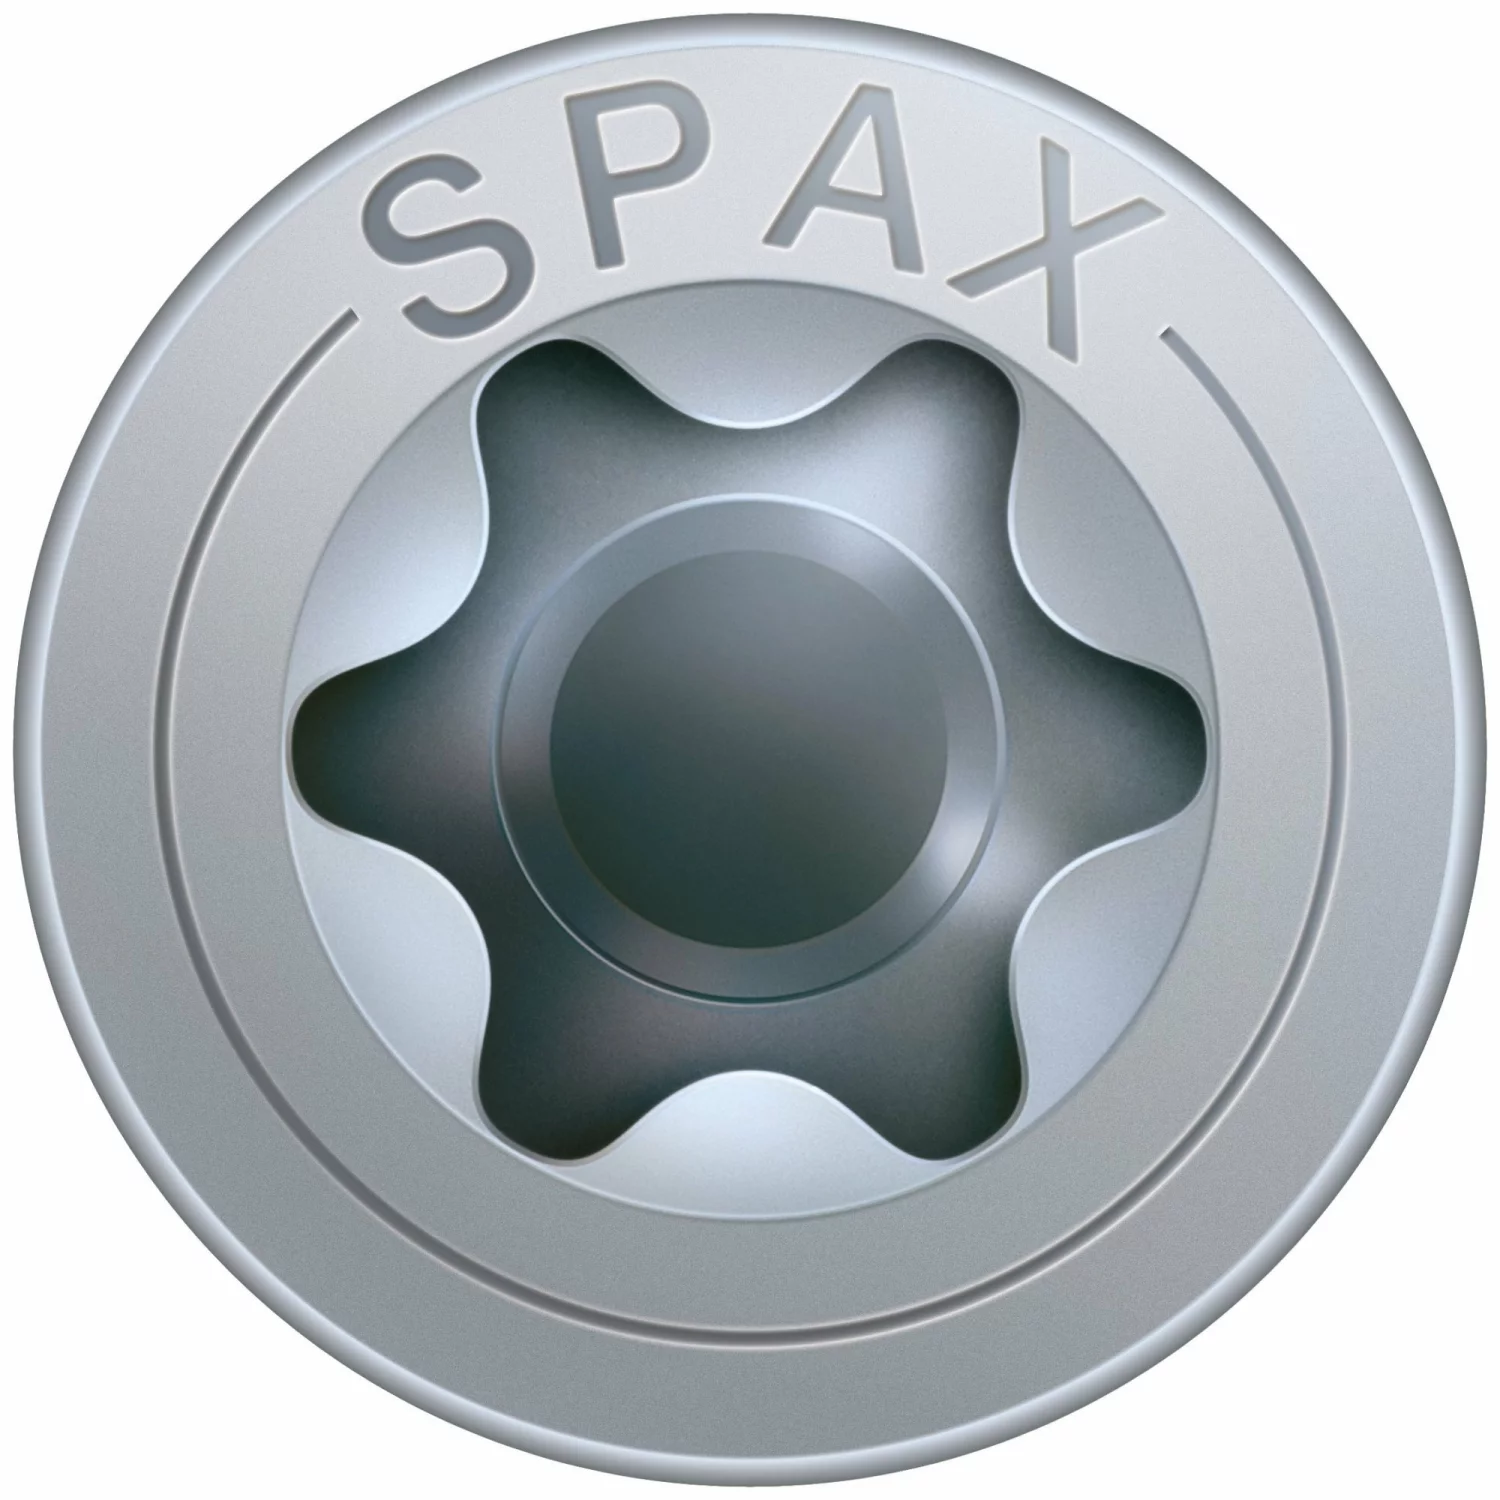 SPAX 1191010400353 - Vis universelle, 4 x 35 mm, 200 pièces, Tête centrante, Tête fraisée, T-STAR plus T20, 4CUT, WIROX-image